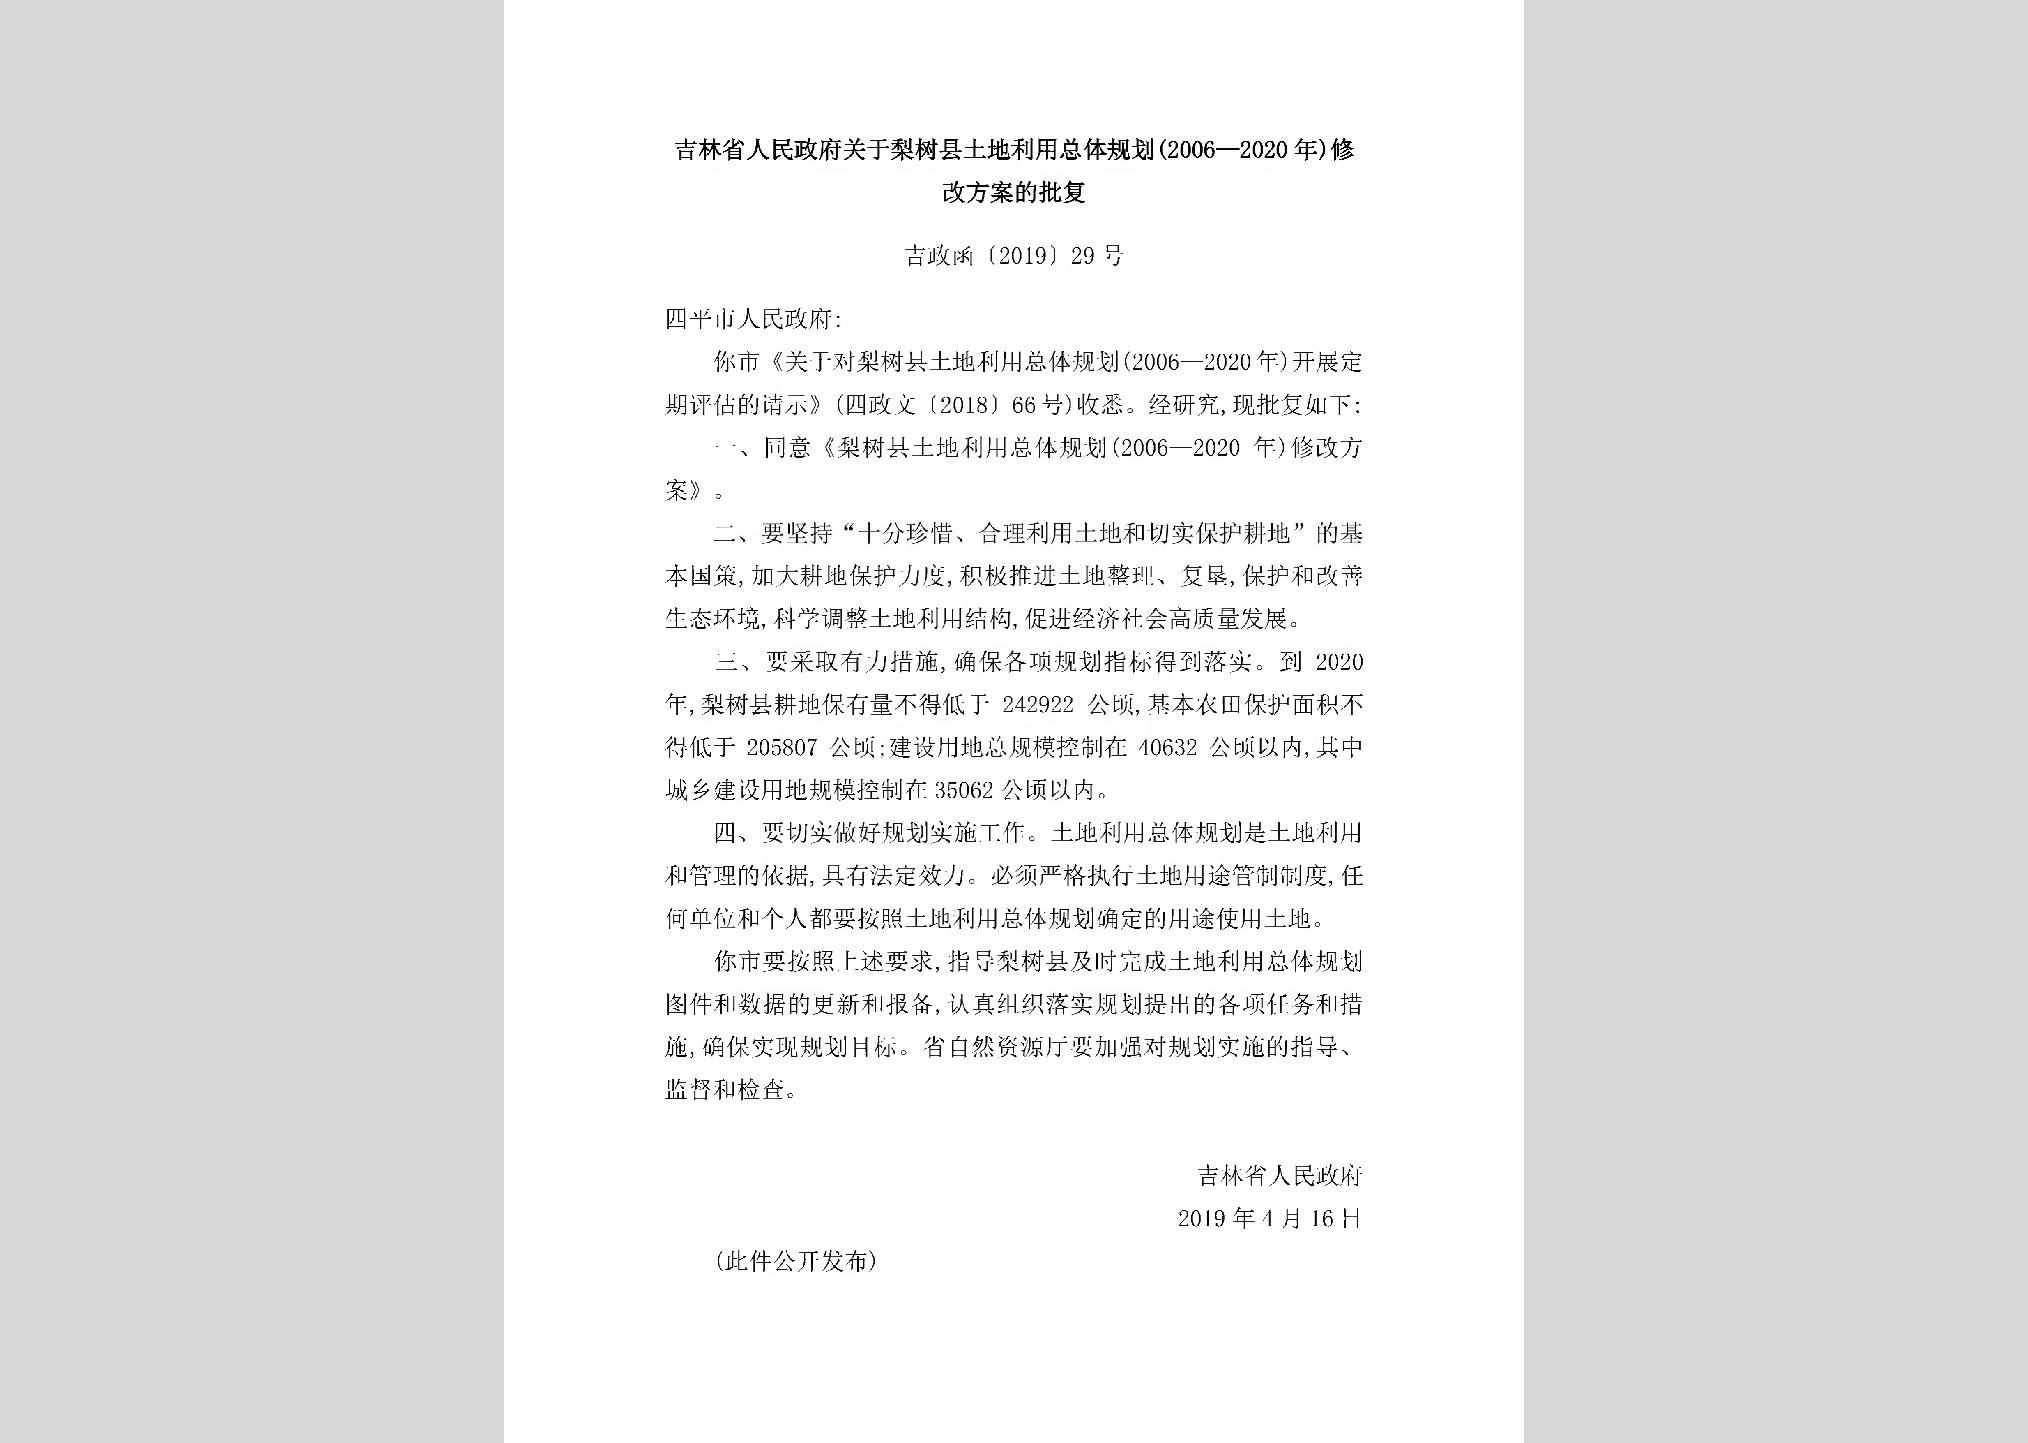 吉政函[2019]29号：吉林省人民政府关于梨树县土地利用总体规划(2006-2020年)修改方案的批复